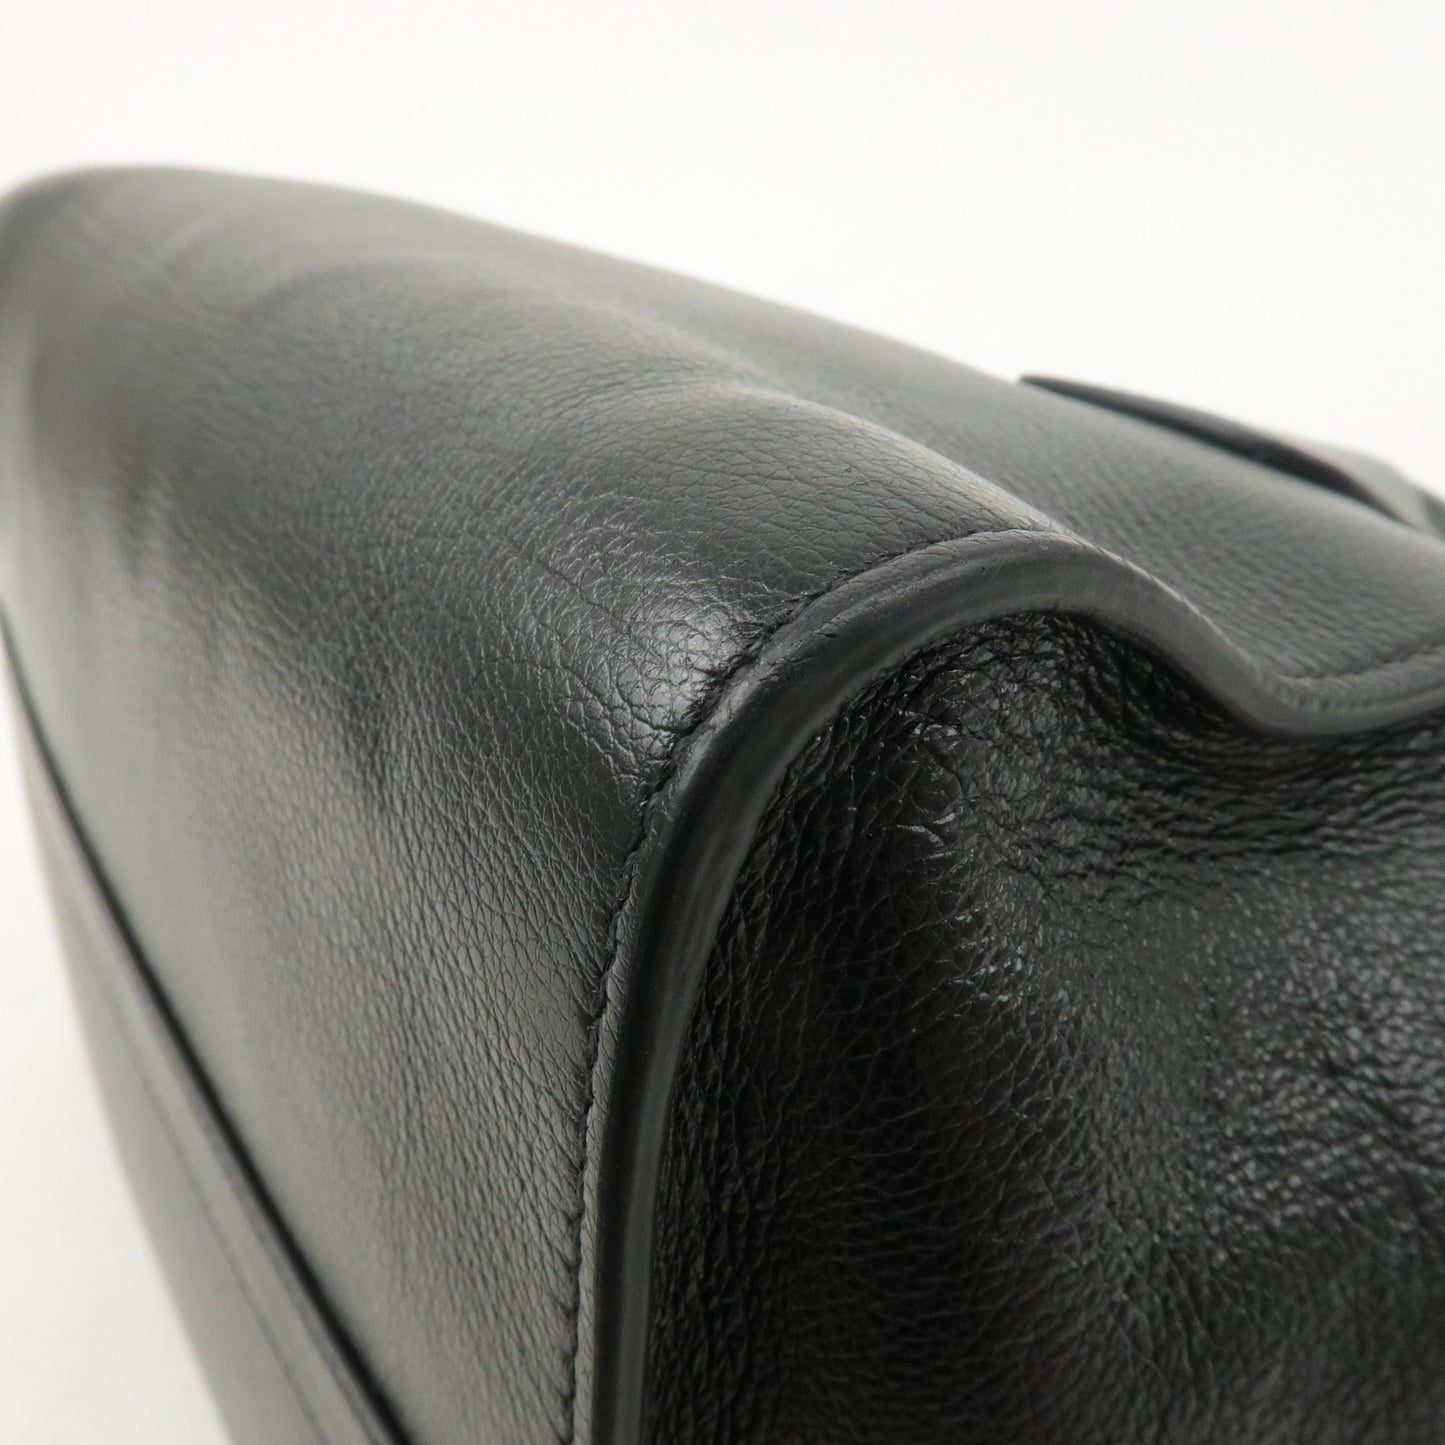 PRADA Logo Leather 2way Bag Hand Bag Shoulder Bag Black